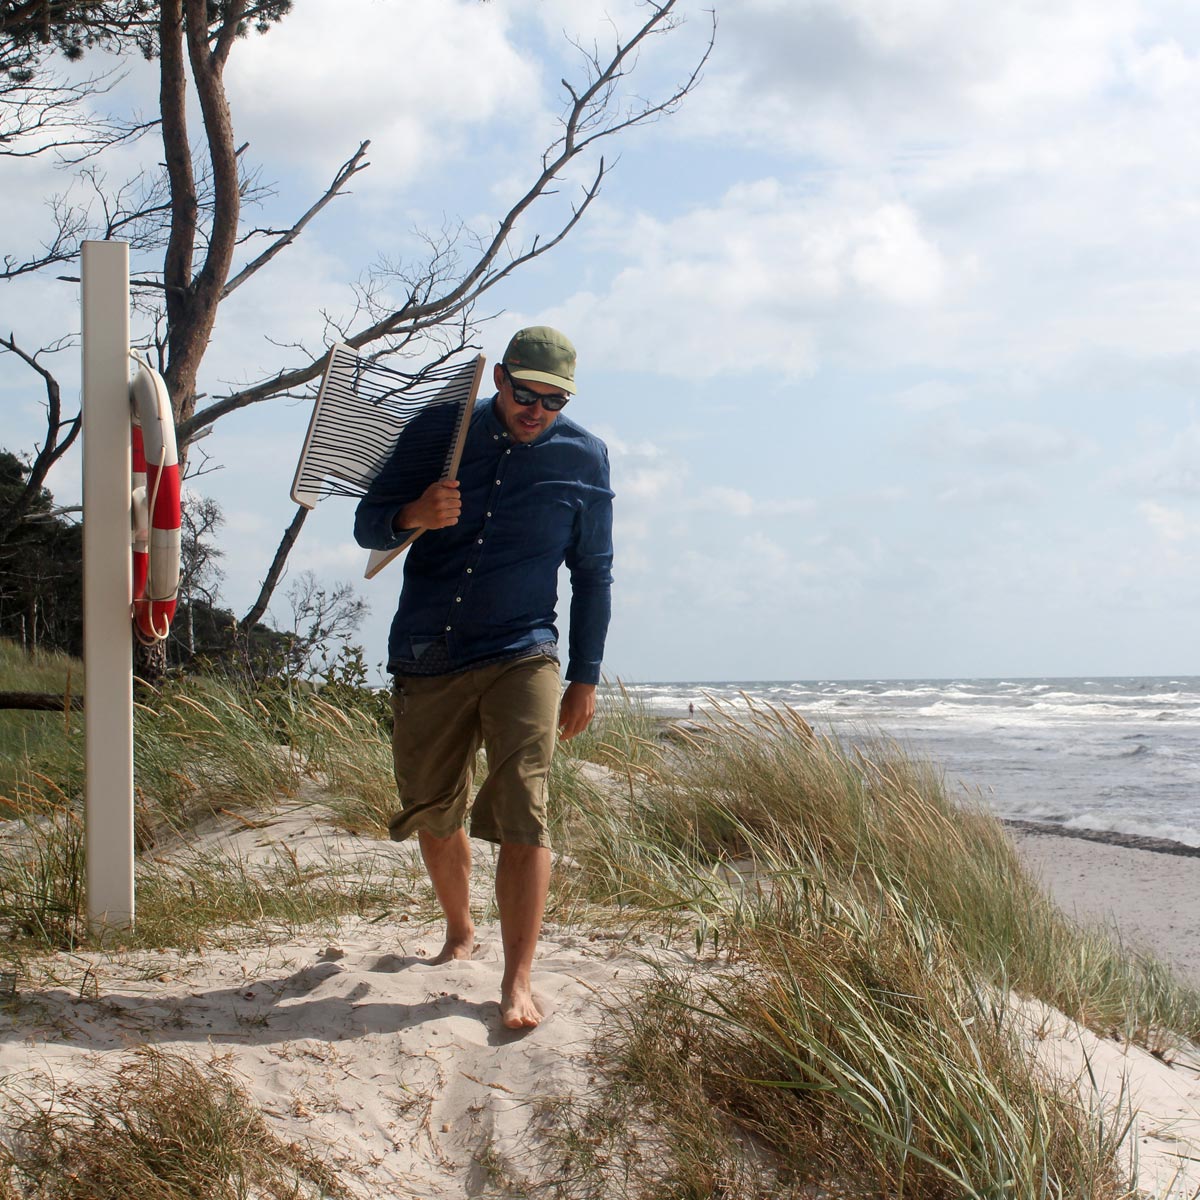 WILJA Klapphocker Karl faltbar aus Holz mit Seil in dunkelblau outdoor unterwegs Begleiter am Strand